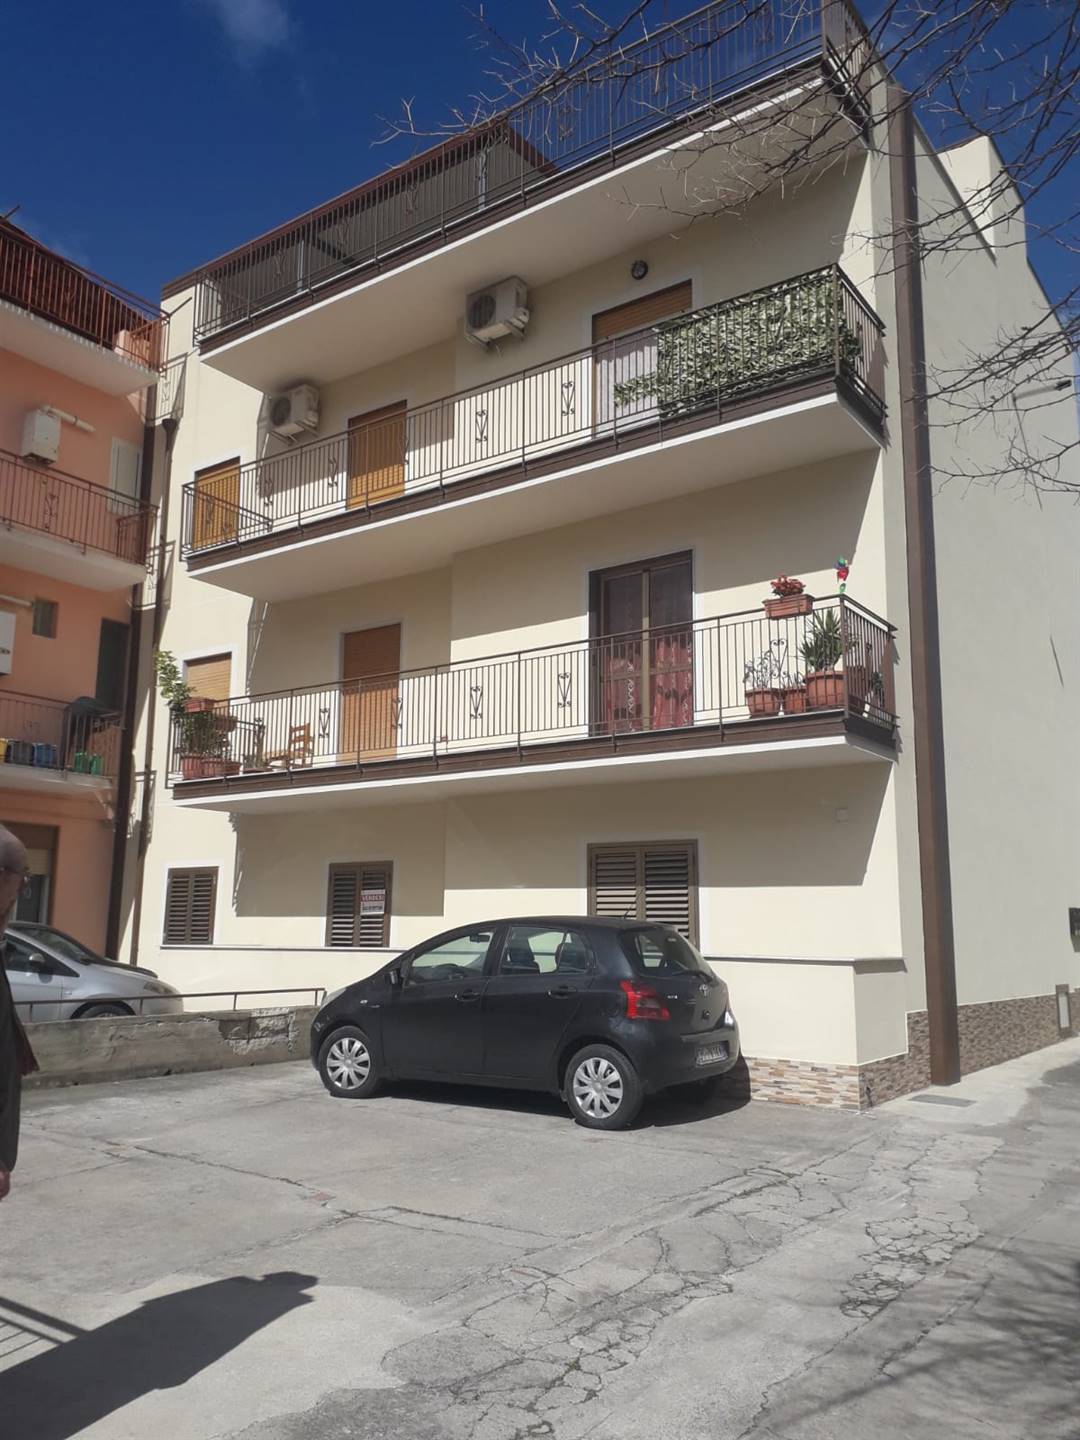 Appartamento in vendita a Torrenova, 5 locali, zona Località: TORRENOVA, prezzo € 70.000 | CambioCasa.it